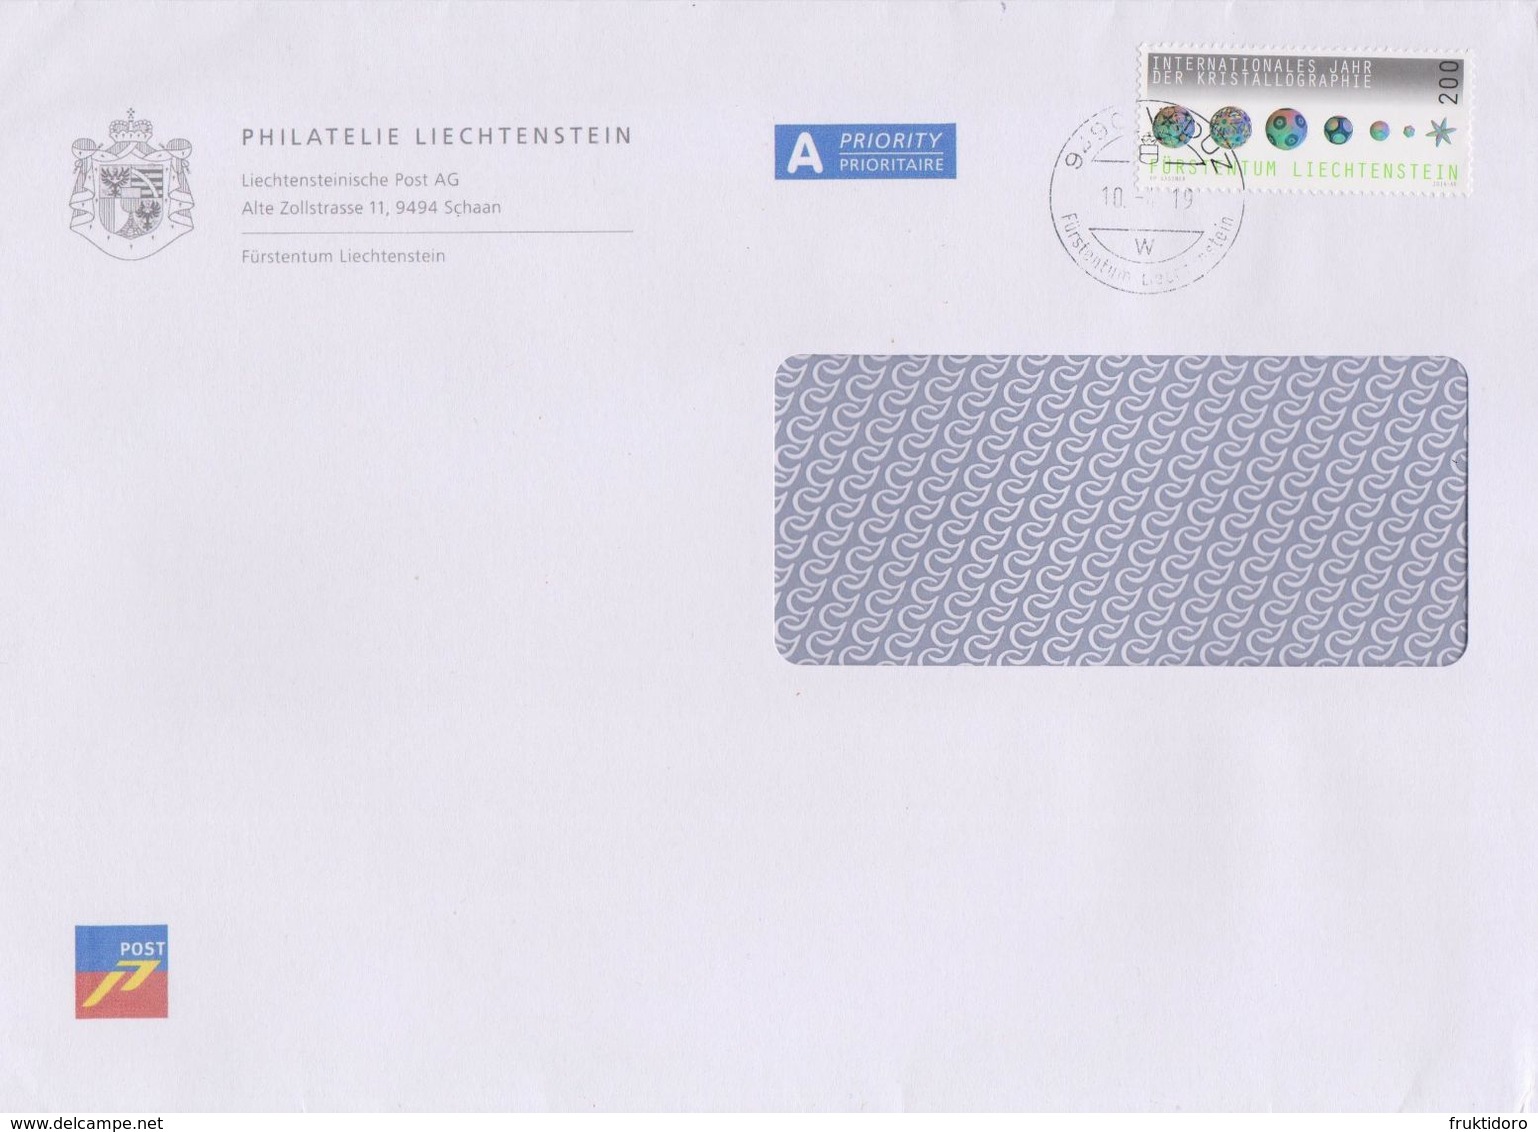 Liechtenstein Postmark - Envelope Philatelie Liechtenschtein - Mi 1732 - Crystallography Cancellation October 2019 - Macchine Per Obliterare (EMA)